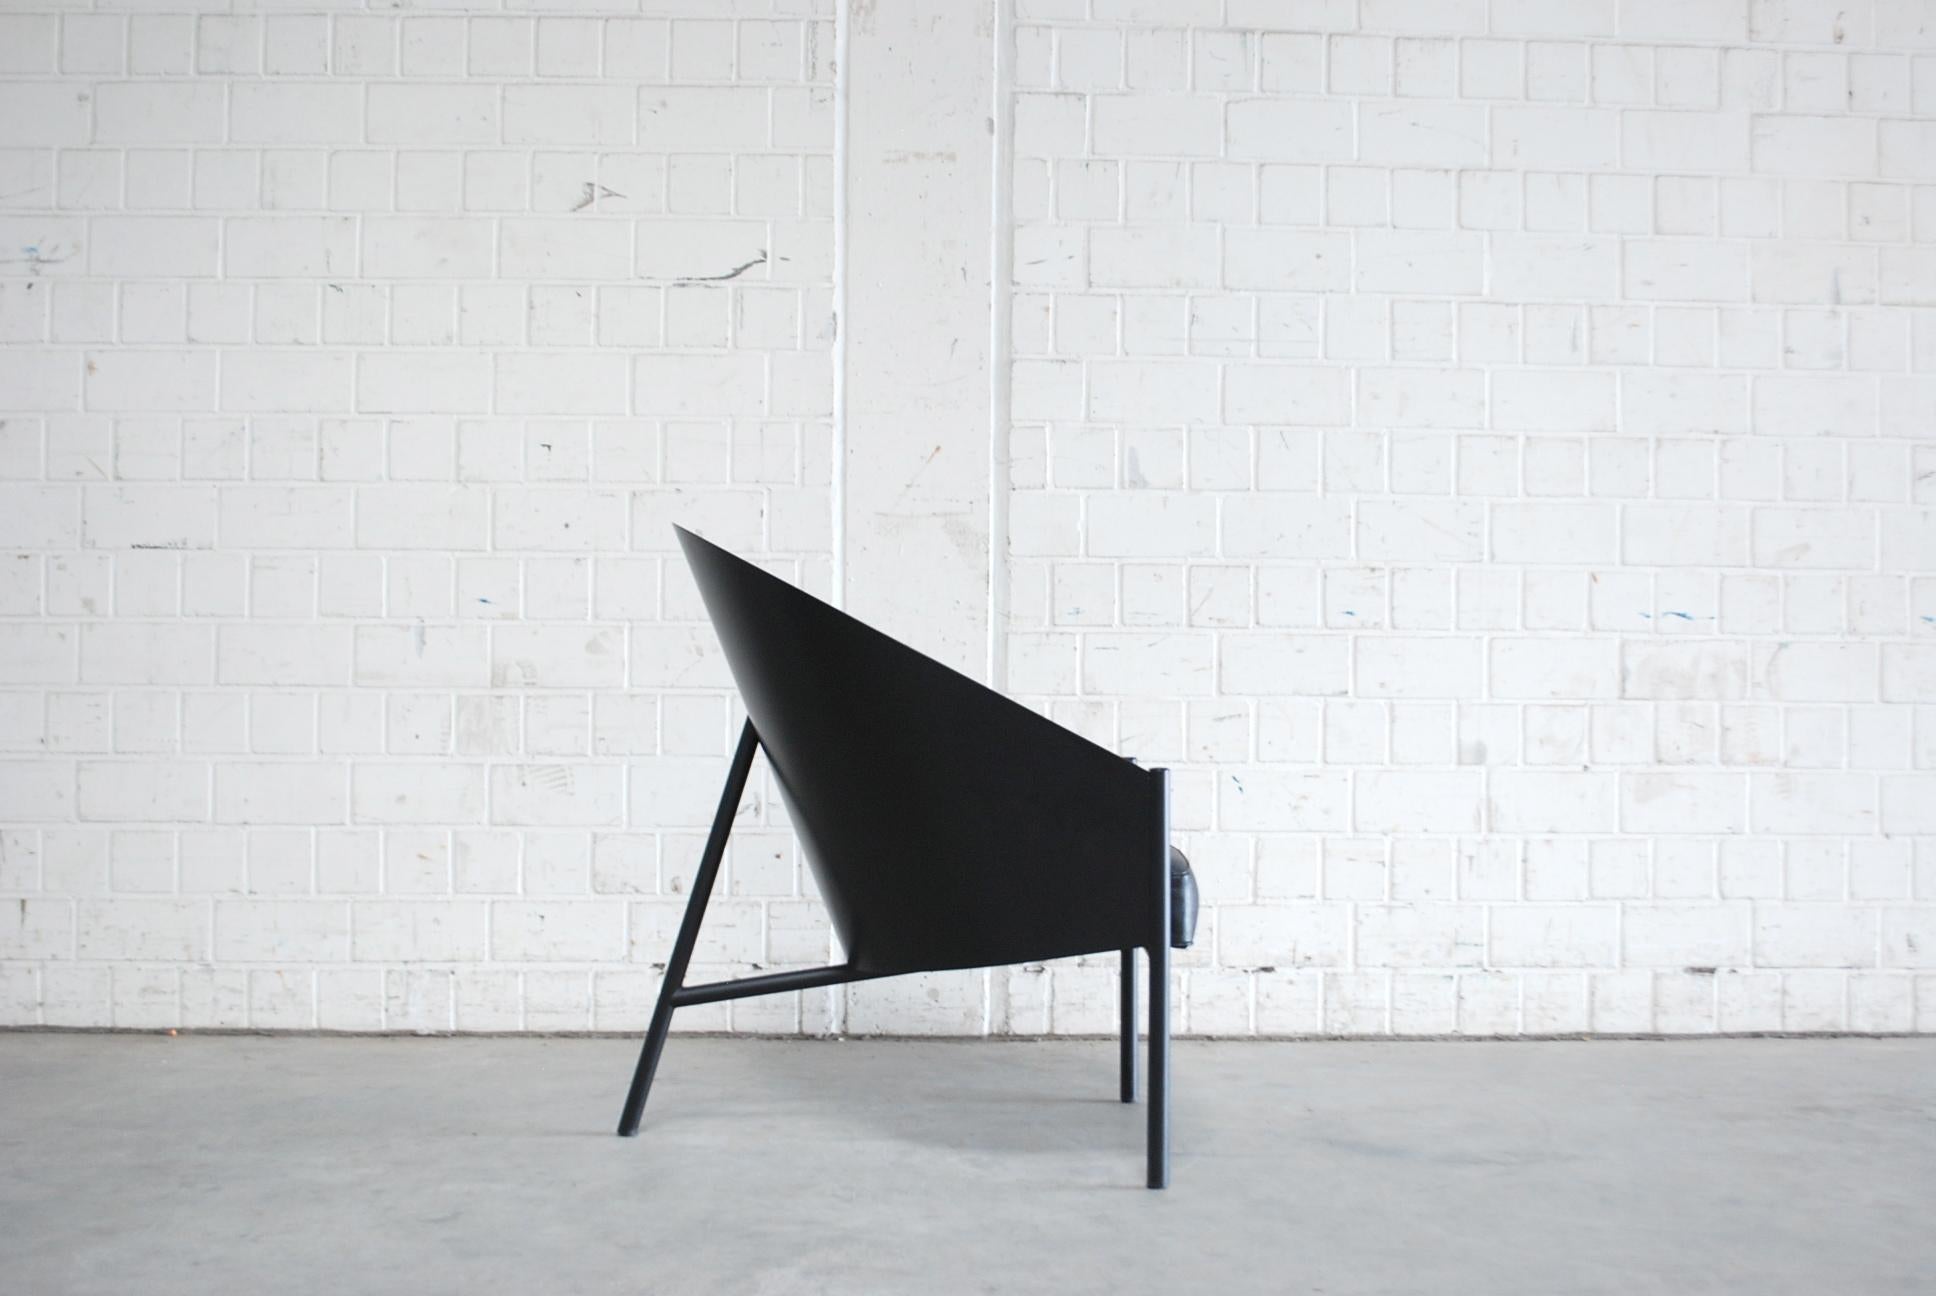 Fauteuil modèle Pratfall de Philippe Starck pour la manufacture italienne Driade Aleph.
Coque en cuir noir et contreplaqué laqué noir sur tube d'acier noir.
Ce fauteuil offre un grand confort. Beaucoup plus grande que la chaise de salle à manger